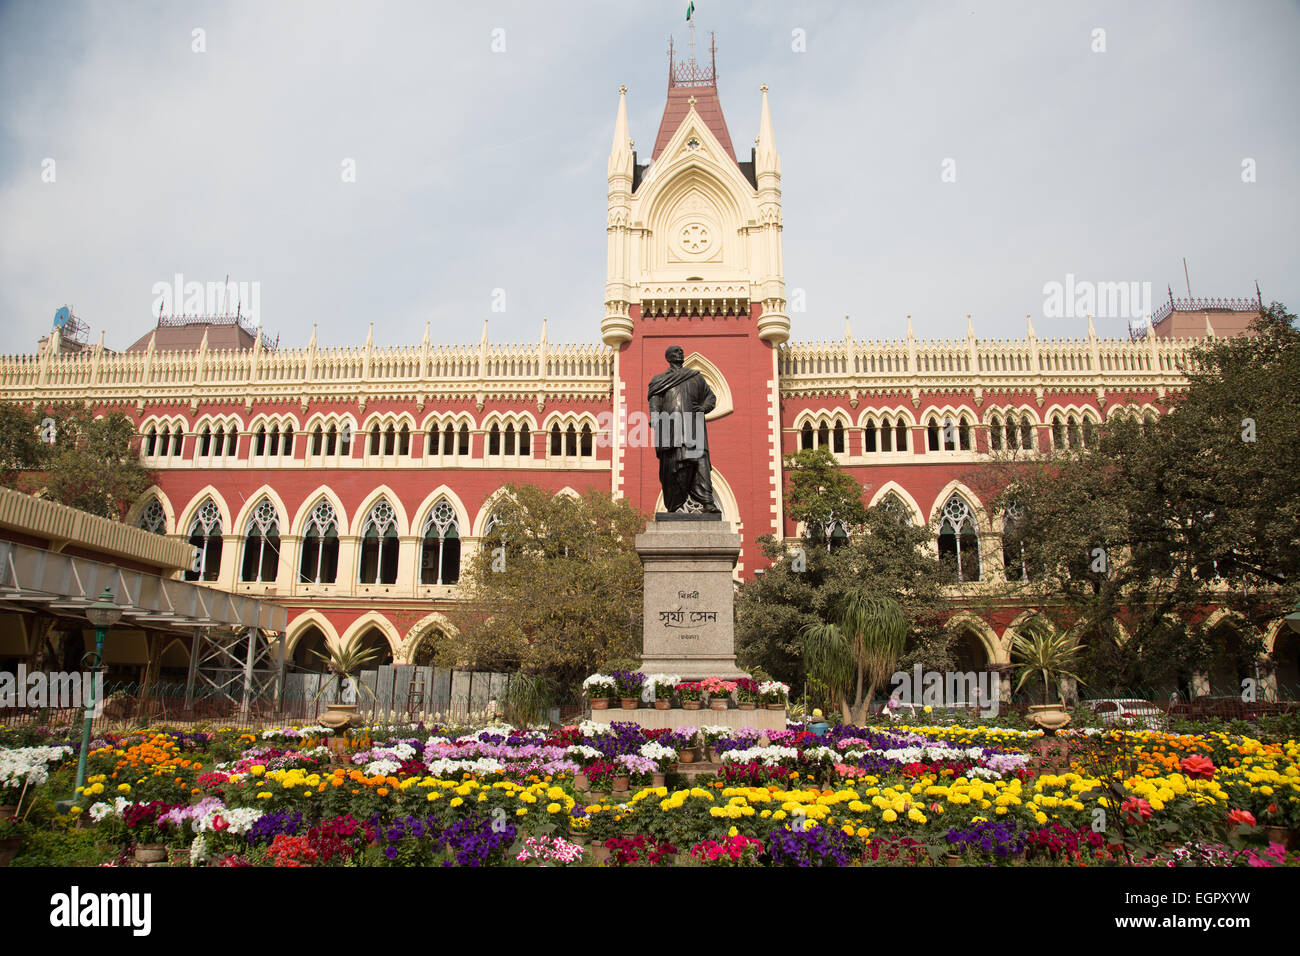 Facade of a high court building, Calcutta High Court, Kolkata, Stock Photo